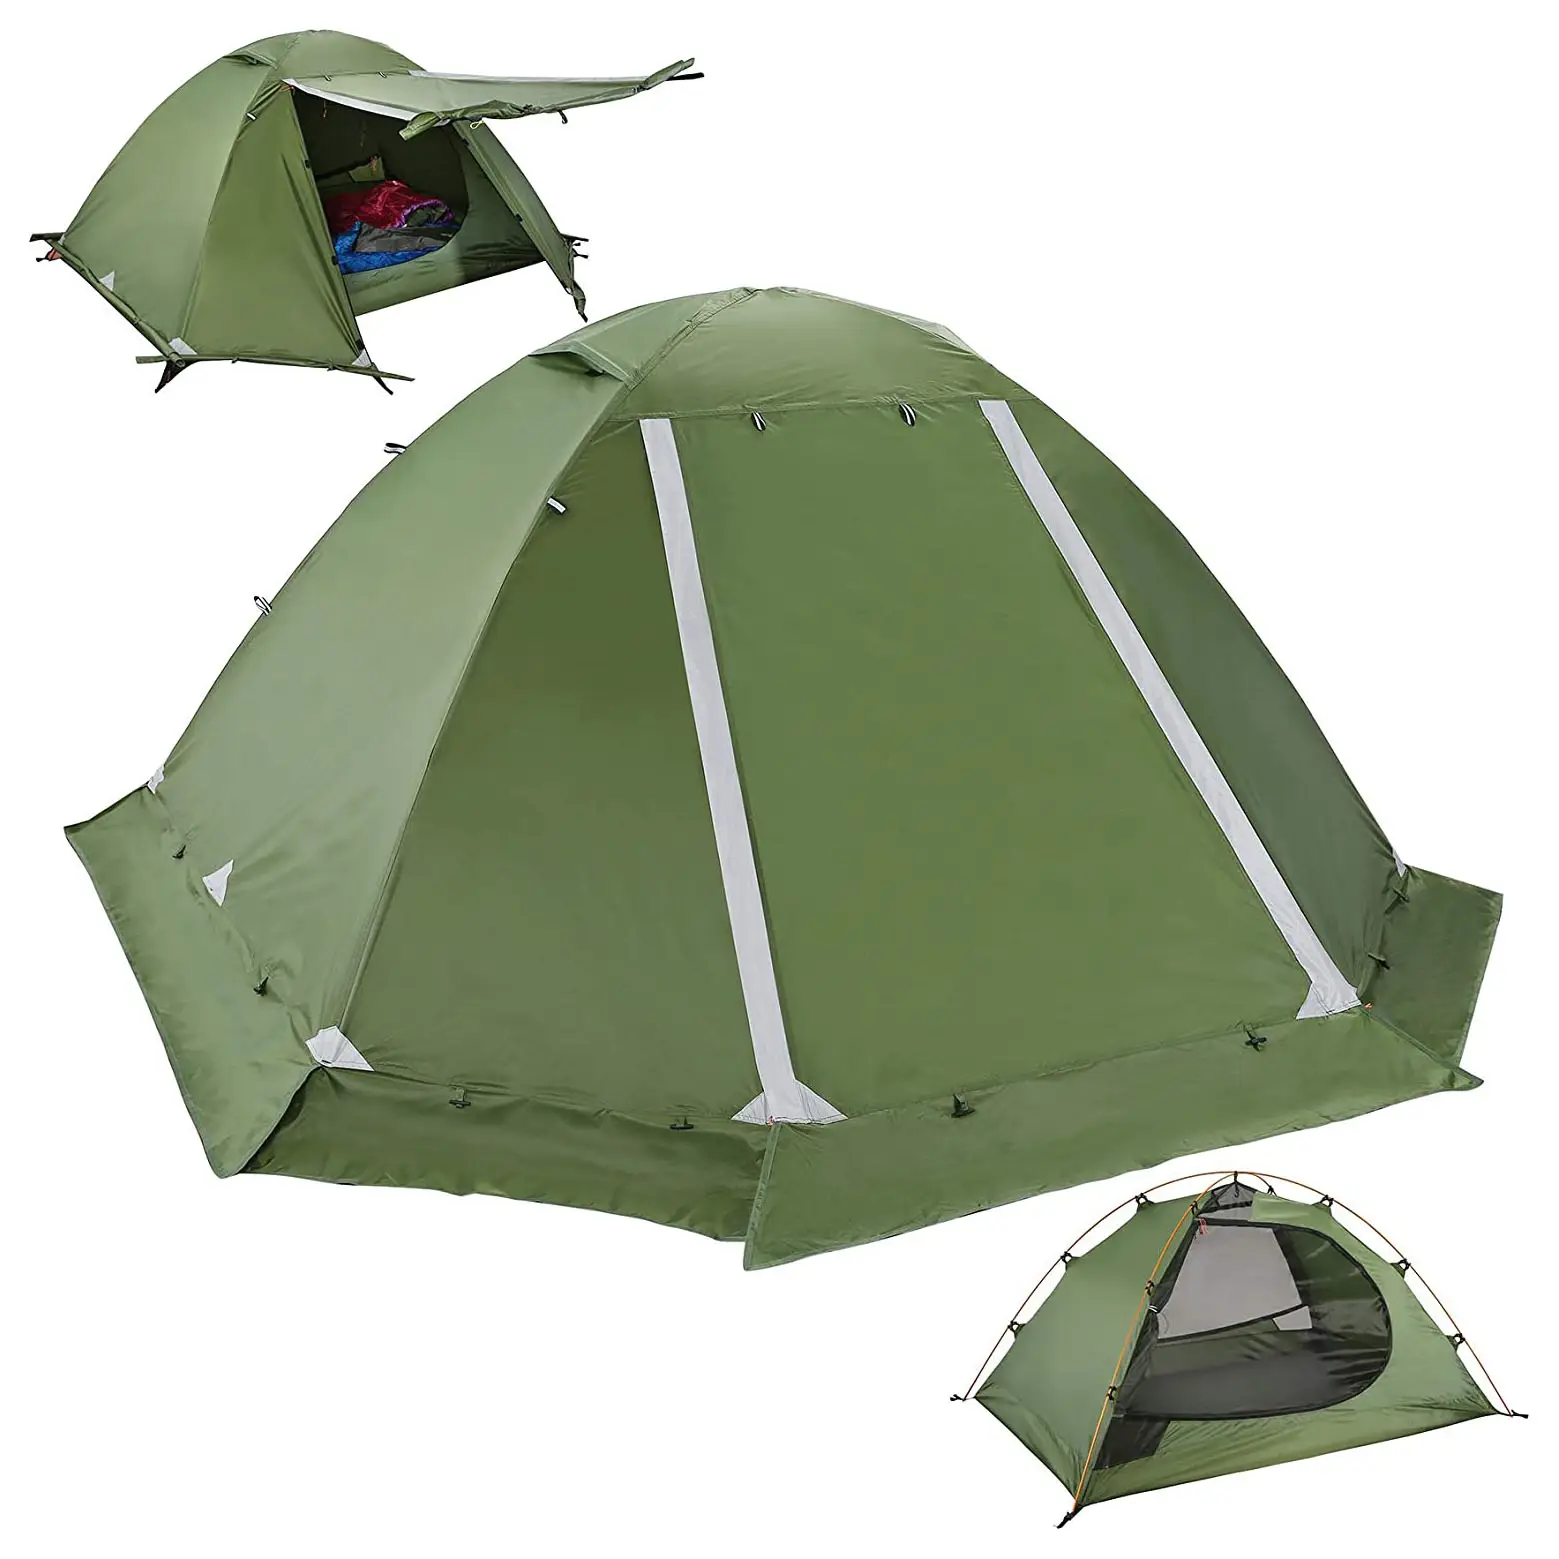 2 Pessoa Ultraleve Barraca Mochila, 3 Temporada Leve Waterproof Camping Tent, Tamanho Grande Fácil Setup Tent Camping Equipment